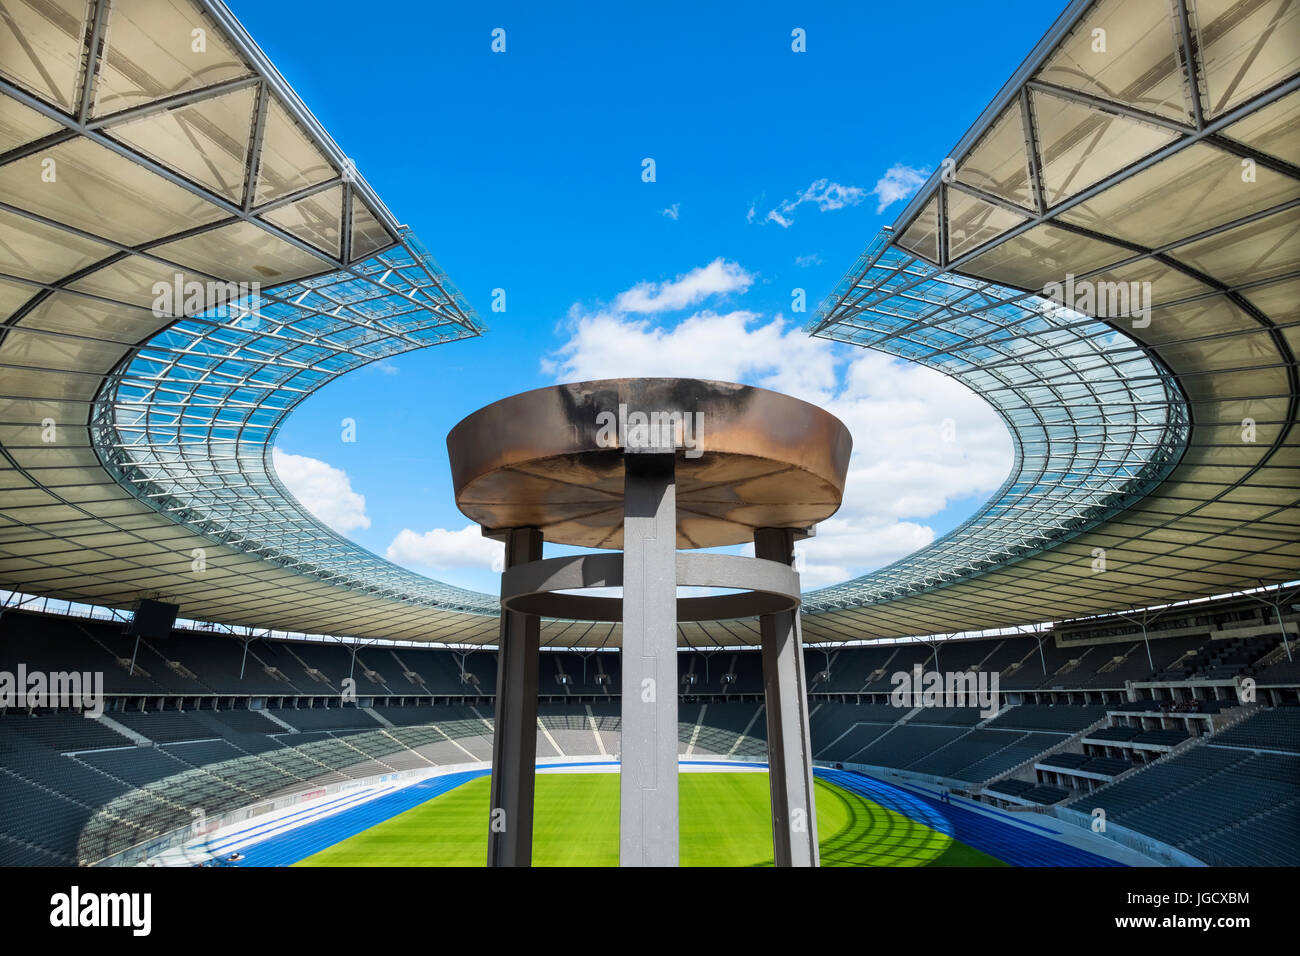 Vue de l'intérieur de l'Olympiastadion (stade Olympique) à Berlin, Allemagne Banque D'Images